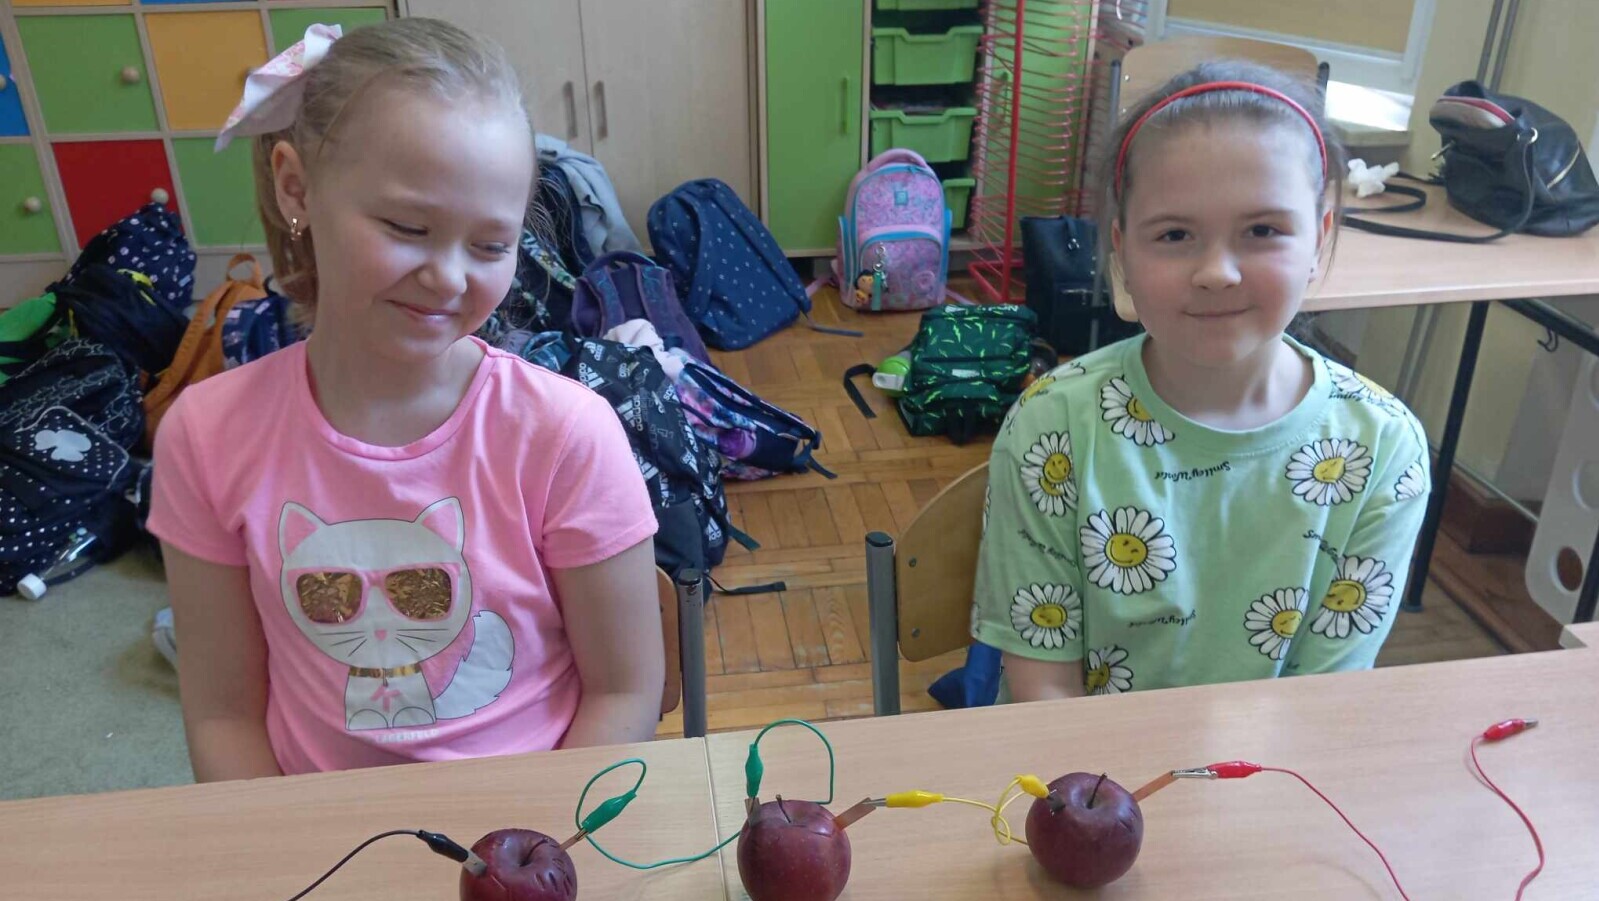 Dziewczynki siedzą przy stole, przed nimi stoi bateria zbudowana z jabłek.